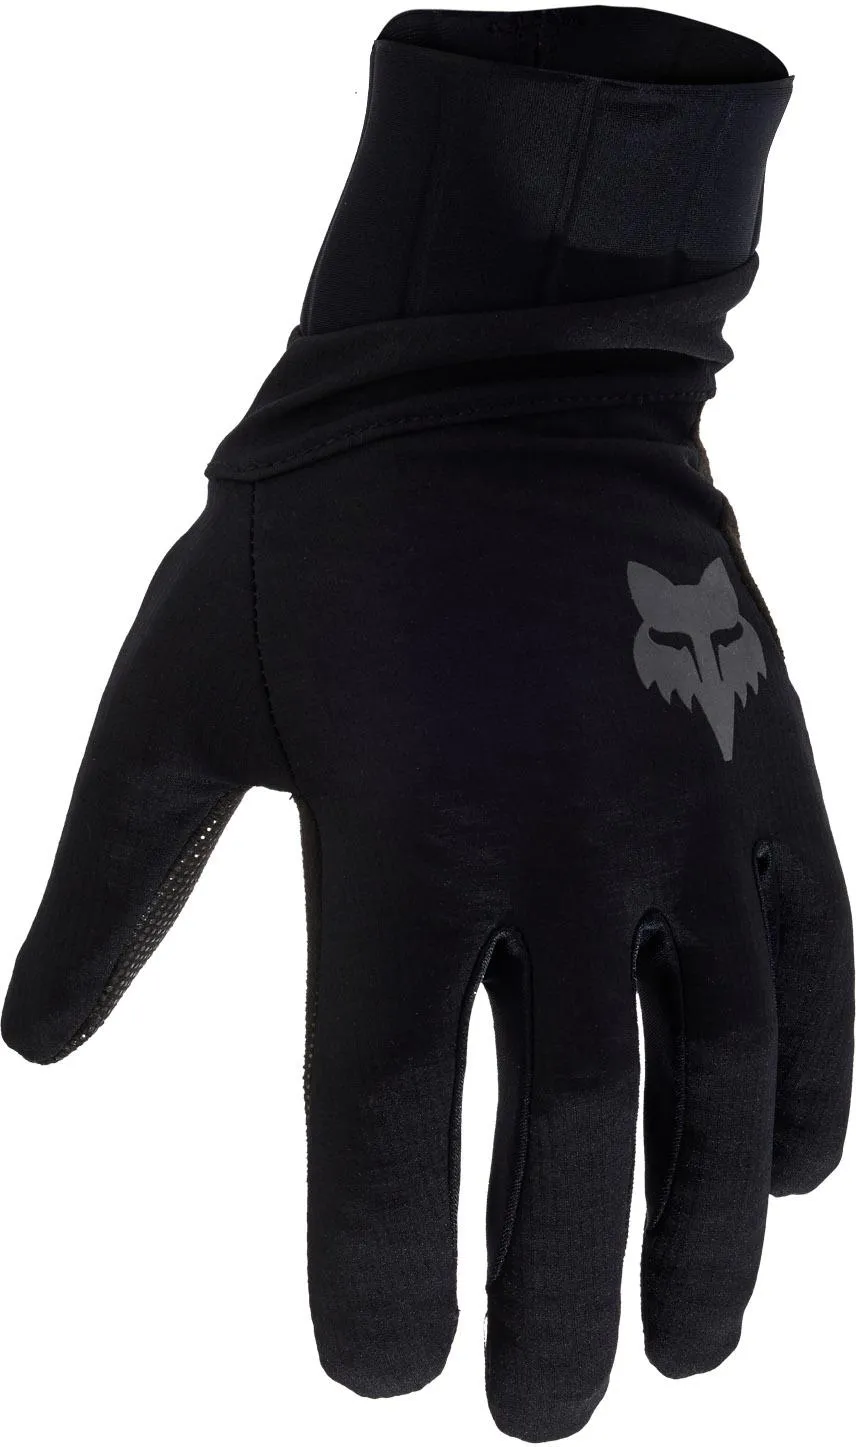  Defend Pro Fire Gloves, Black